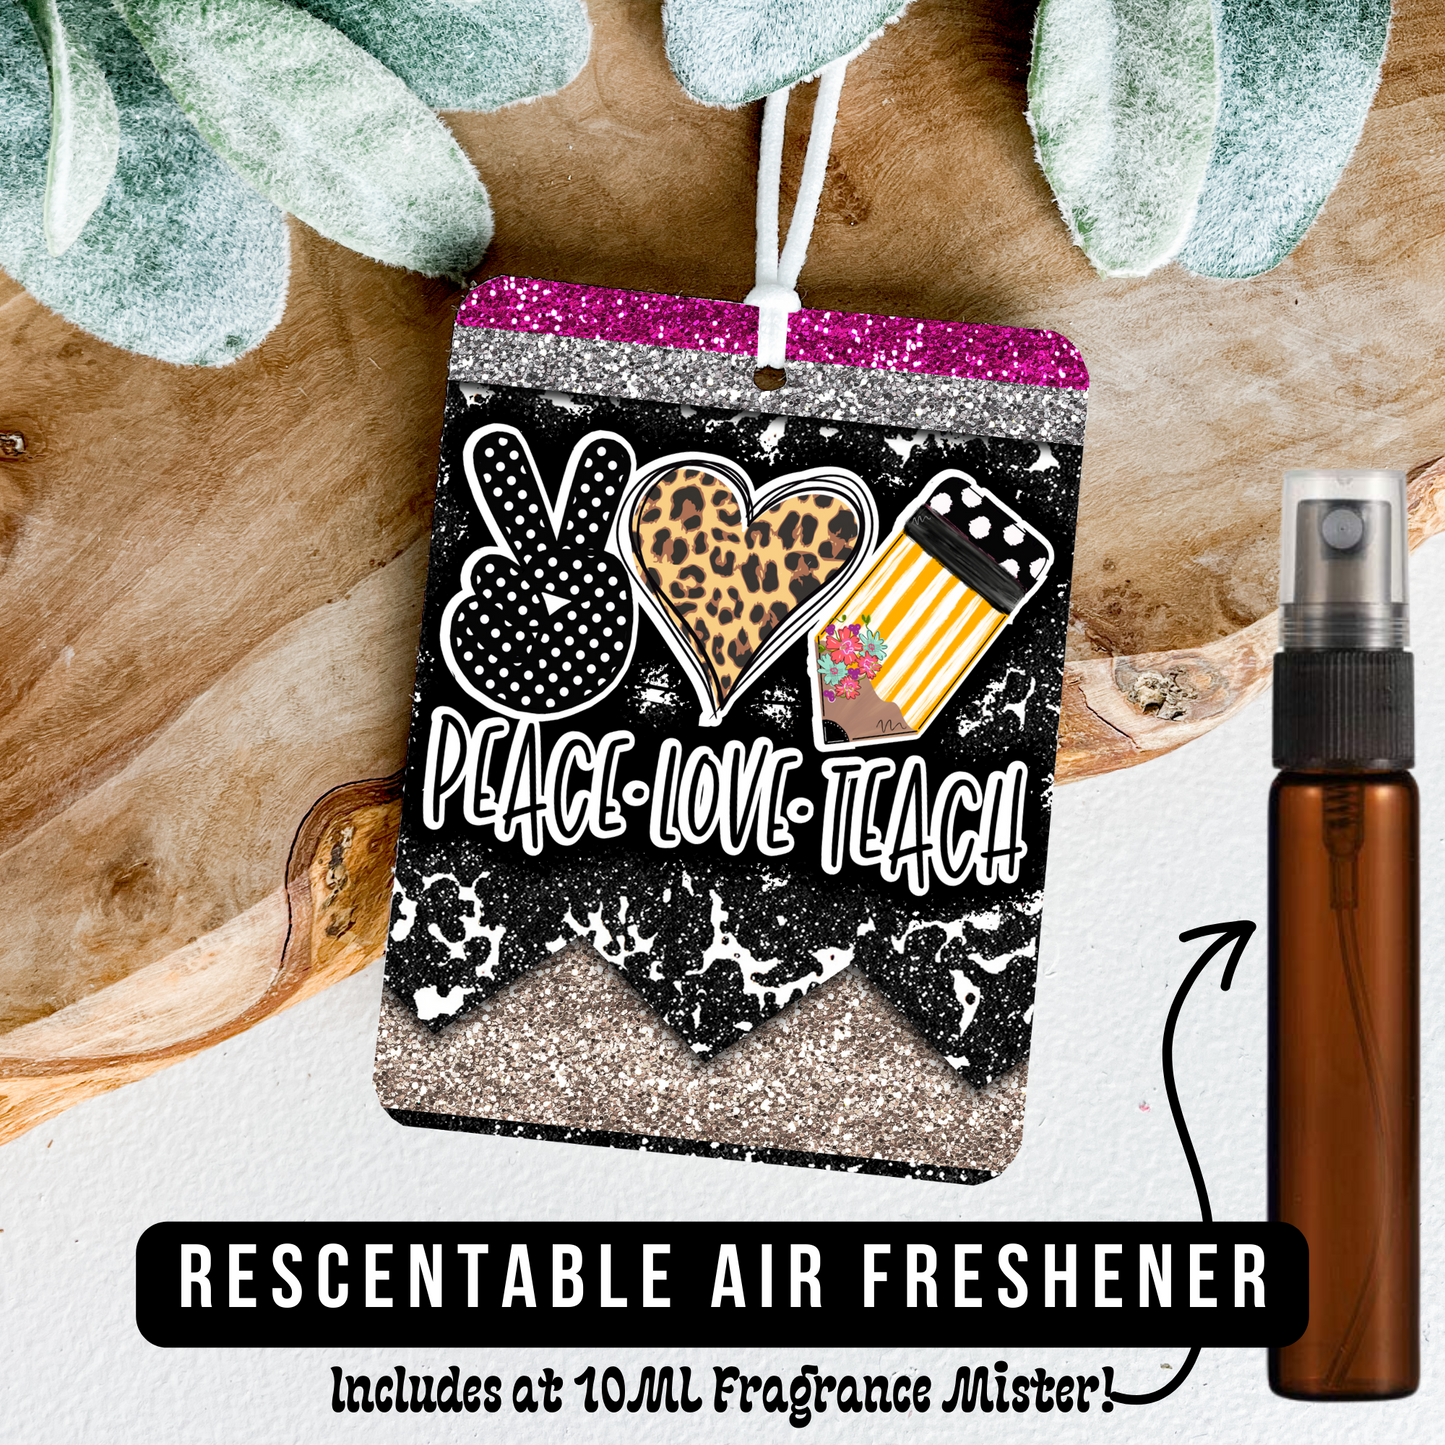 Peace Love Teach - Air Freshener